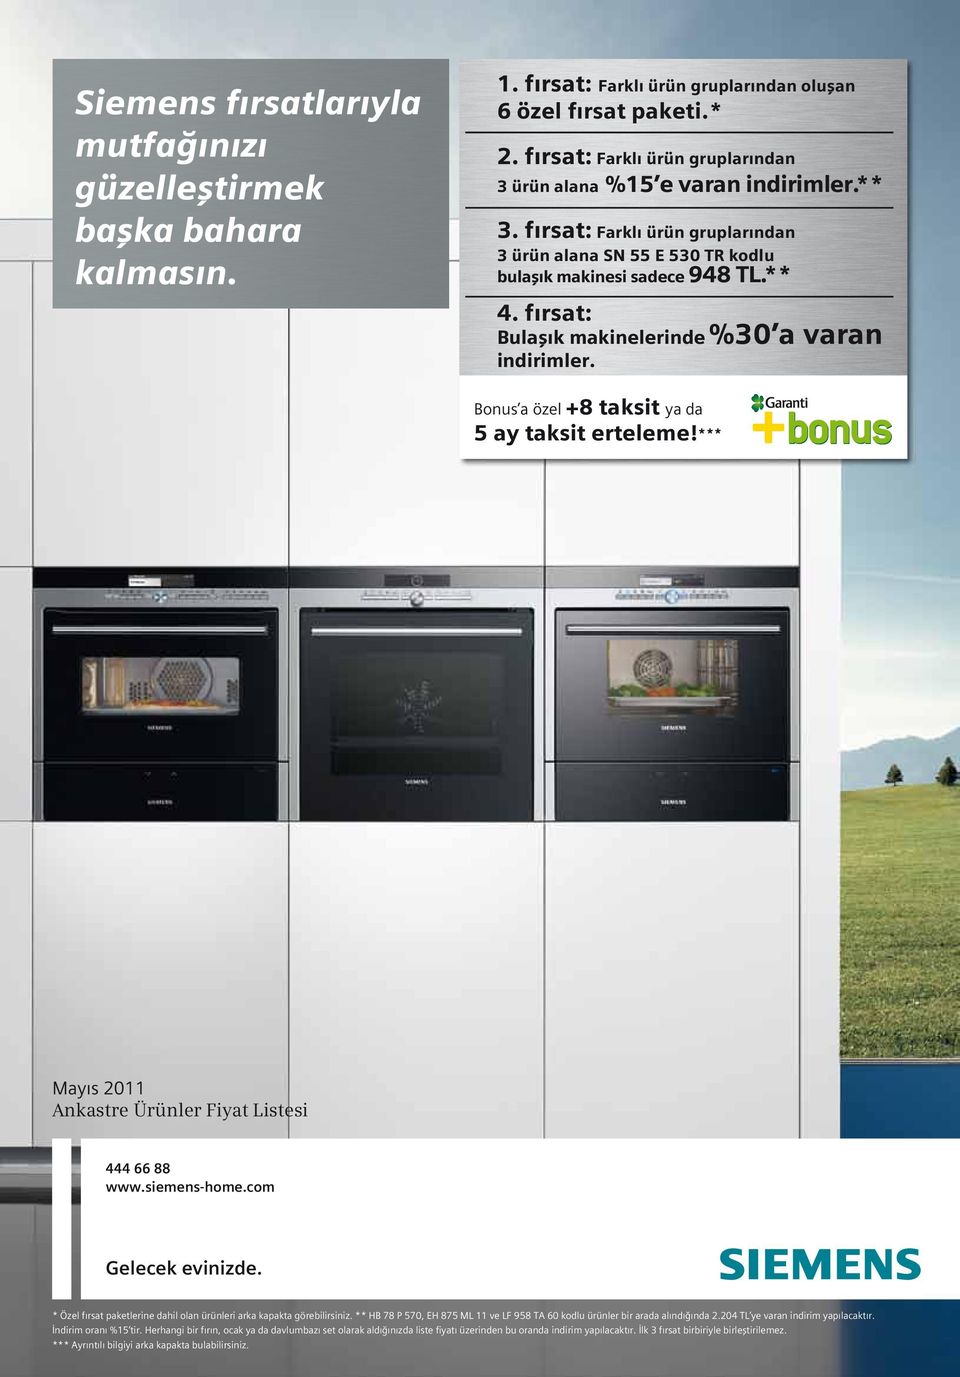 fırsat: Bulaşık makinelerinde %30 a varan indirimler. *** Mayıs 2011 Ankastre Ürünler Fiyat Listesi 444 66 88 www.siemens-home.com Gelecek evinizde.